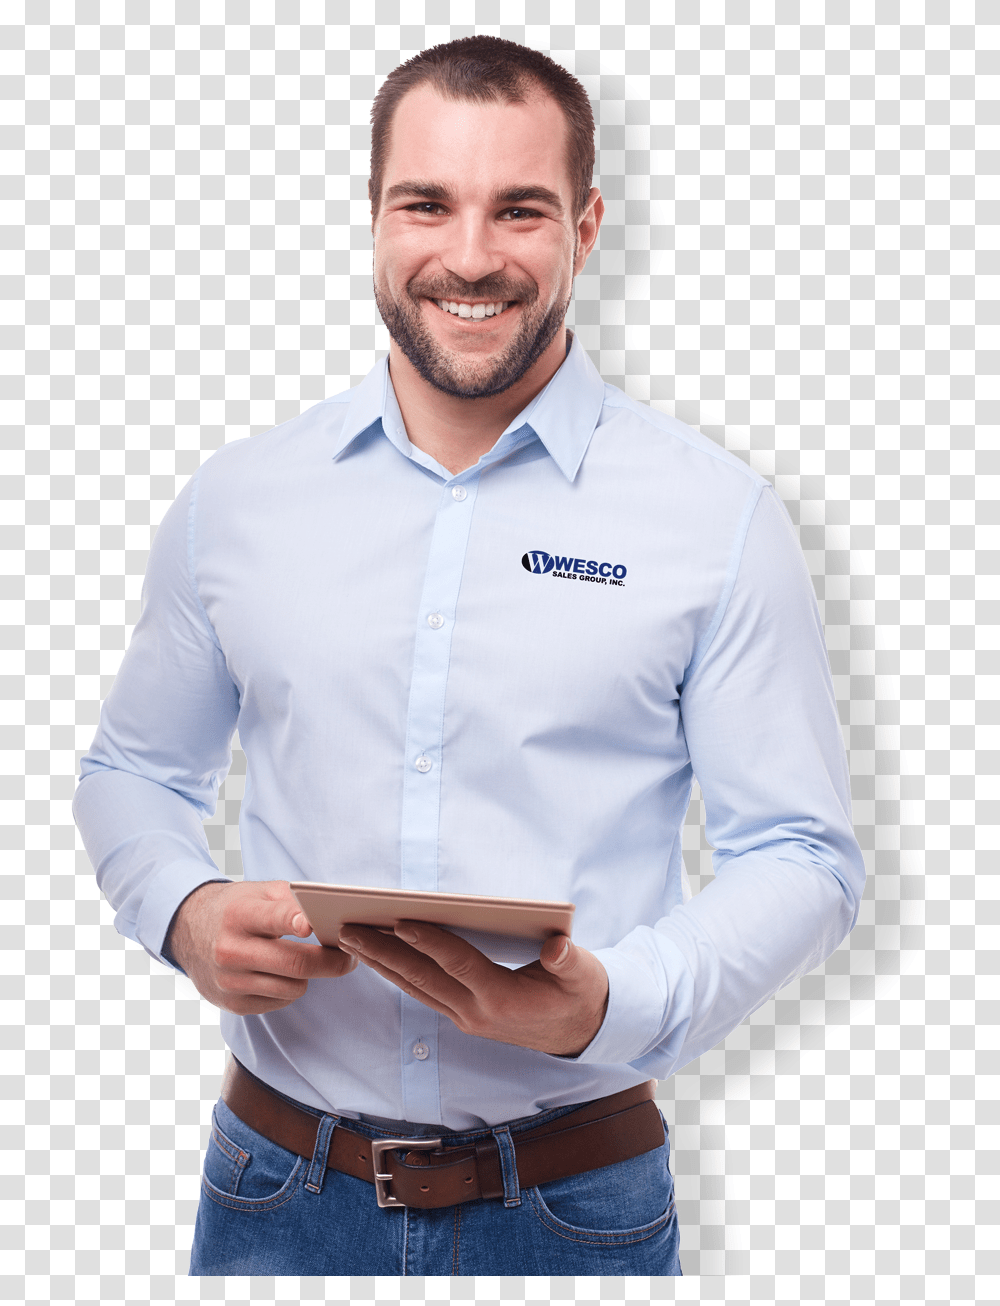 Salesman Professional Business Man, Apparel, Shirt, Dress Shirt Transparent Png